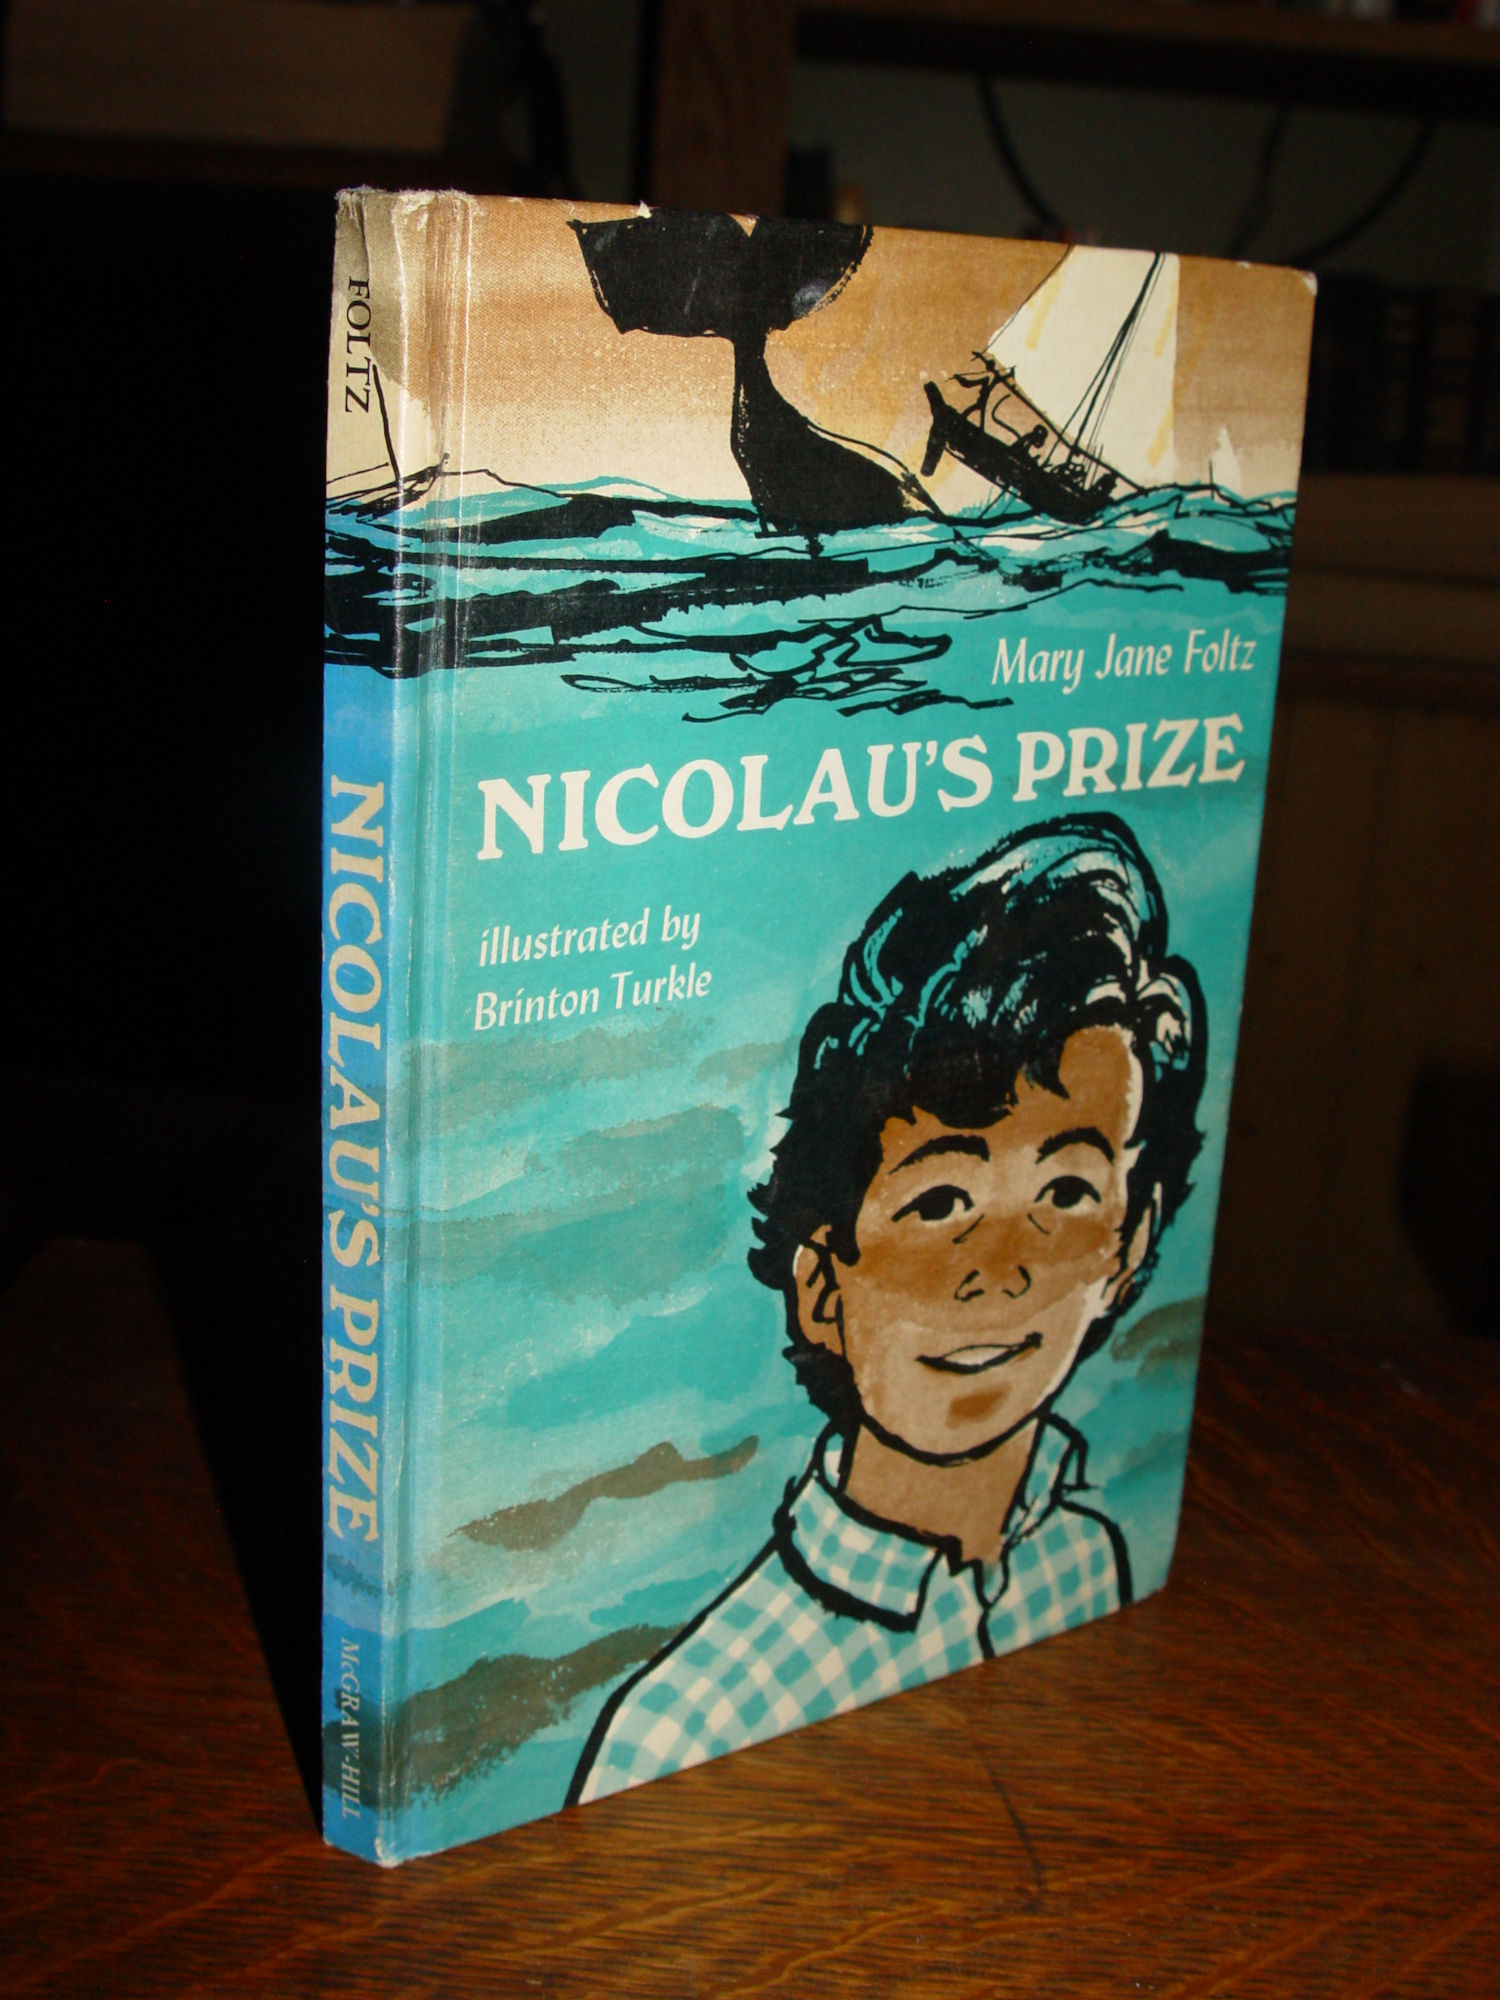 Nicolau's Prize 1967 by Mary Jane Foltz